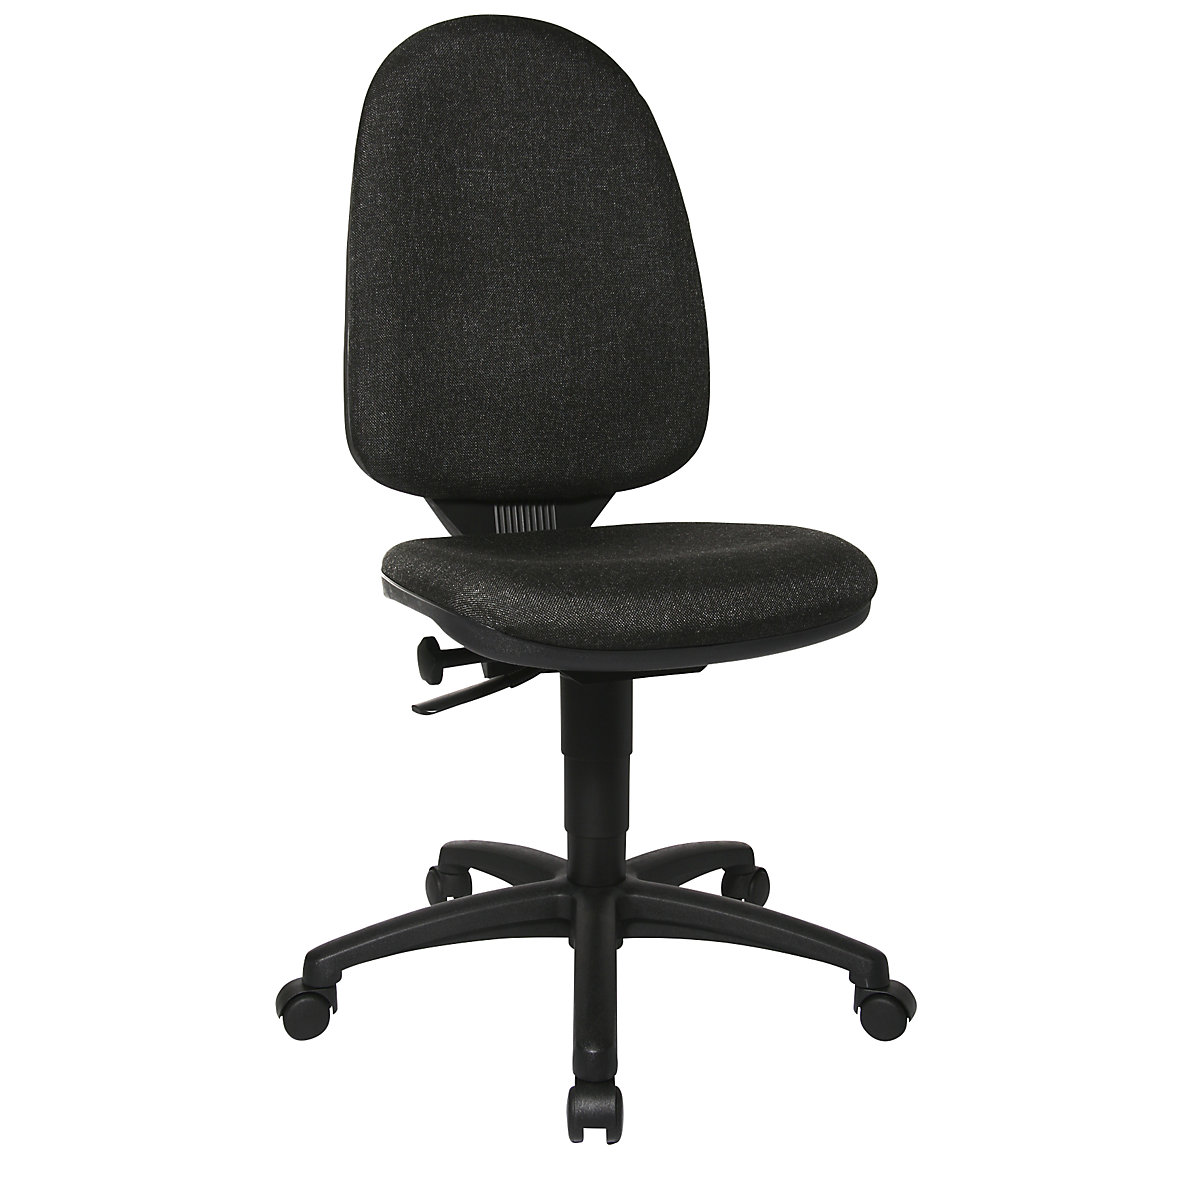 Cadeira giratória standard – Topstar, sem apoios para braços, encosto de 550 mm, armação preta, tecido antracite-4